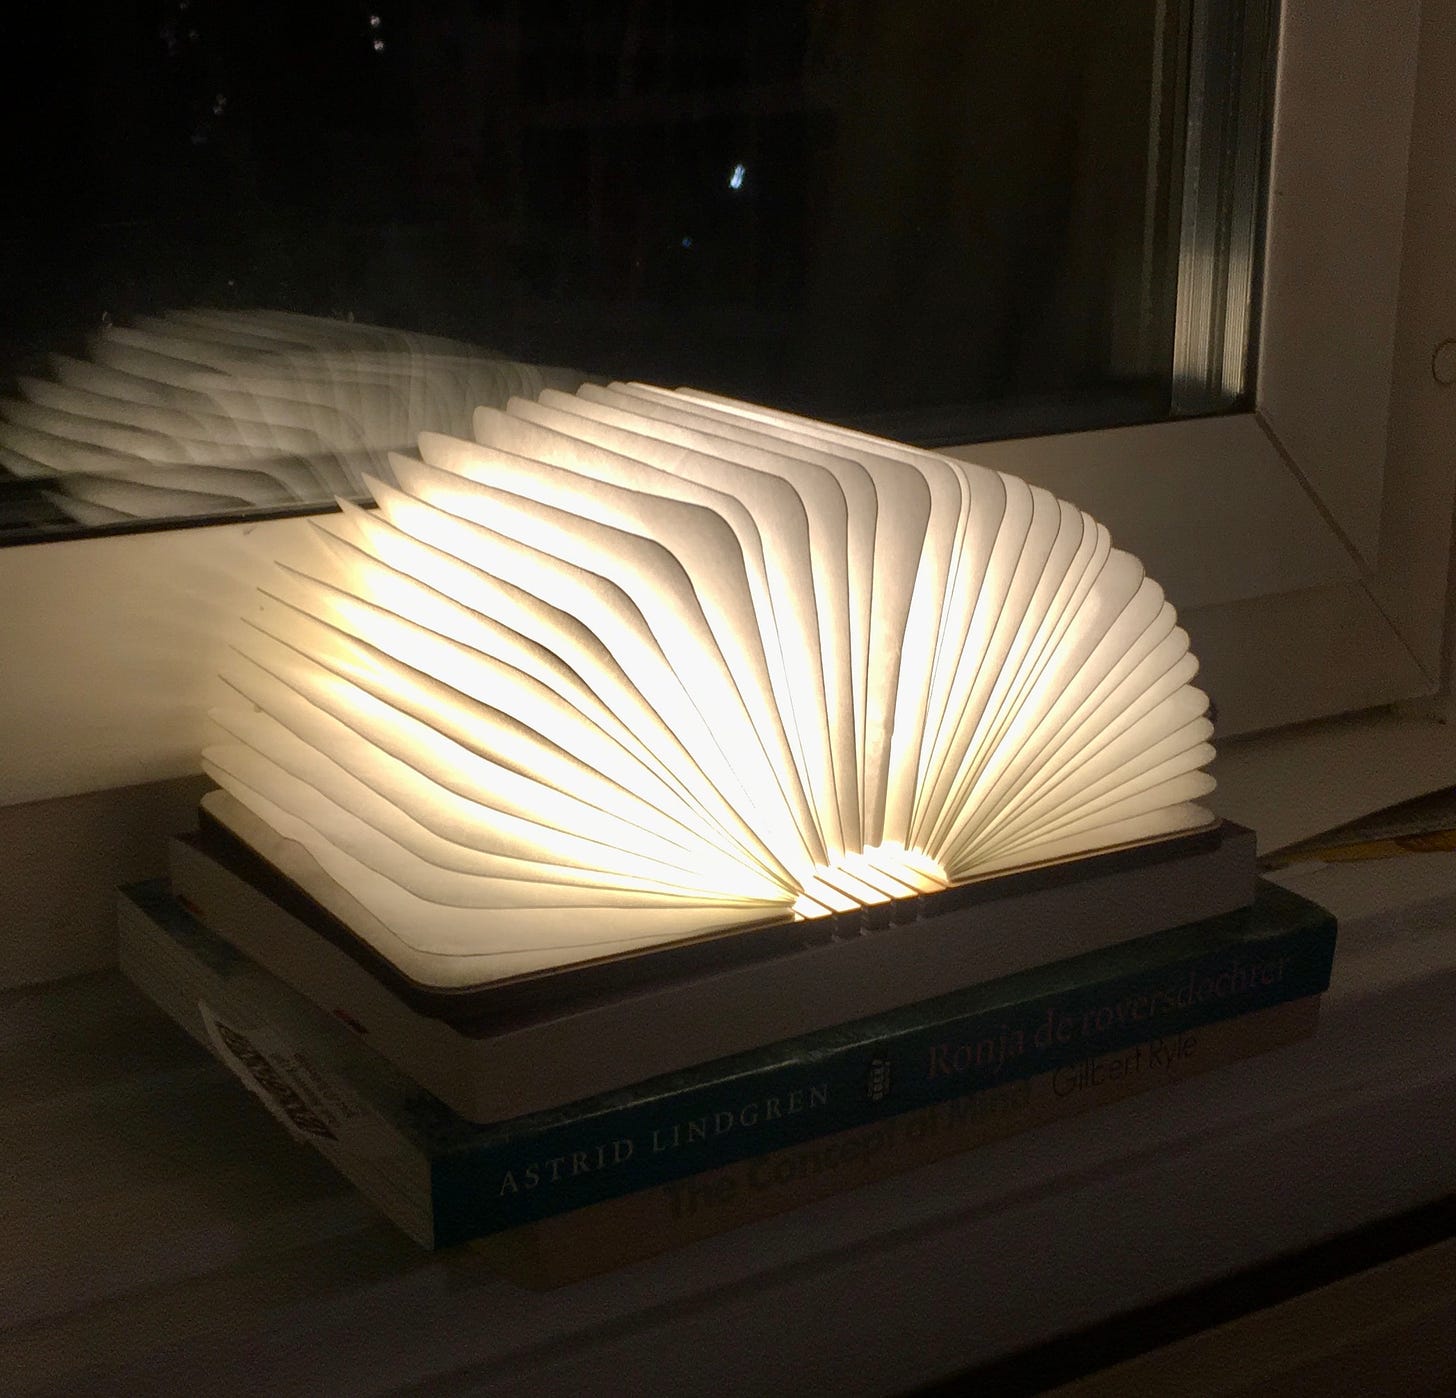 Auf einer Fensterbank liegen zwei Bücher, darauf eine kleine Lampe, die aussieht wie ein aufgeschlagenes Buch. Das ist die einzige Lichtquelle, sonst ist es dunkel.